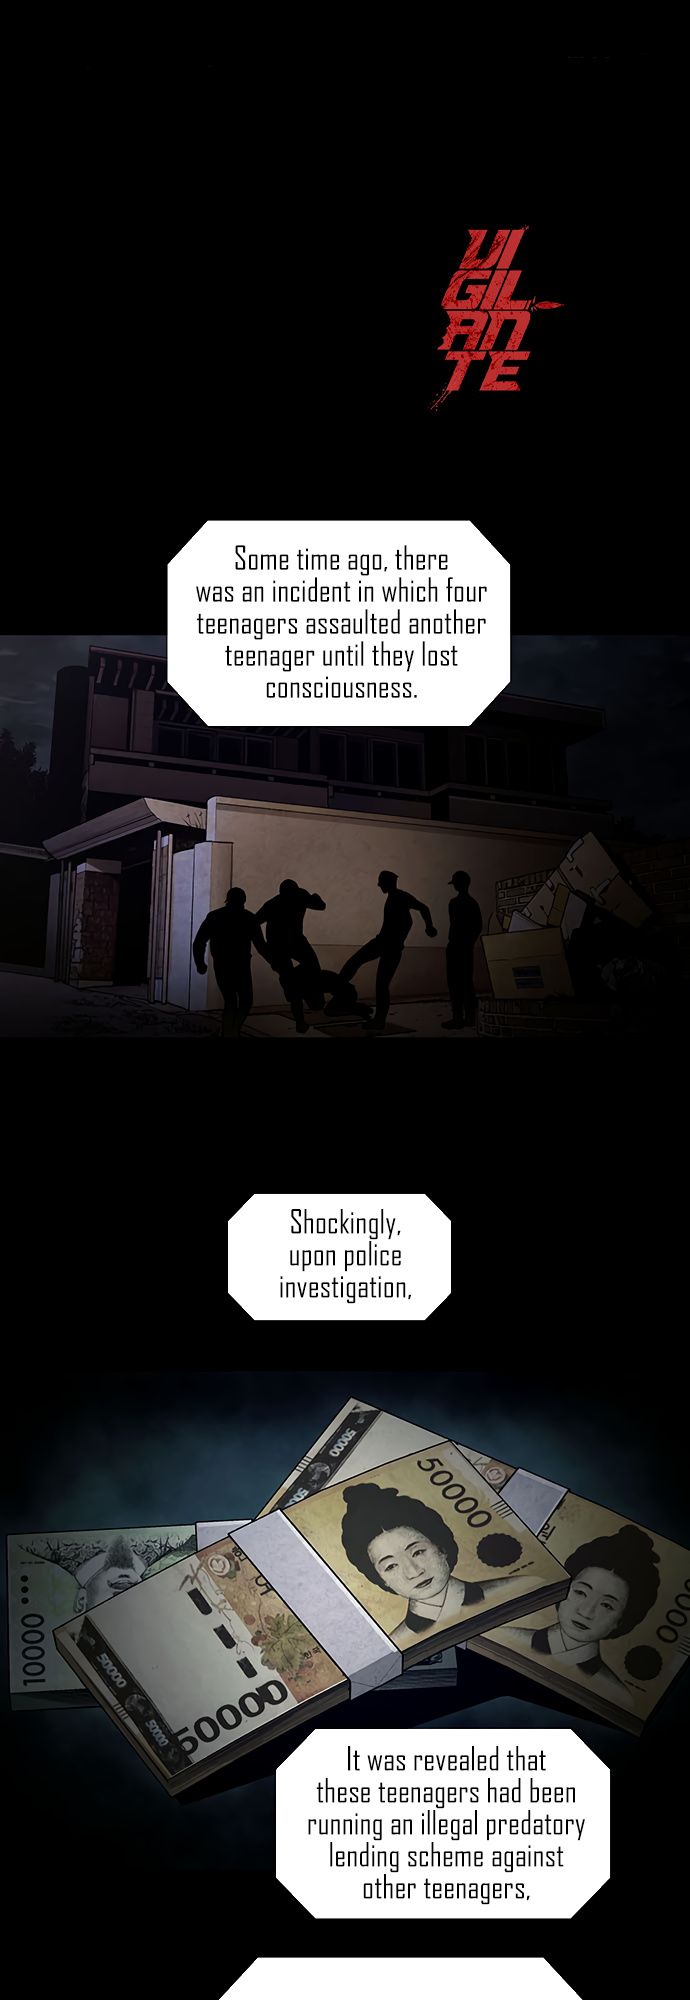 Vigilante - Page 1